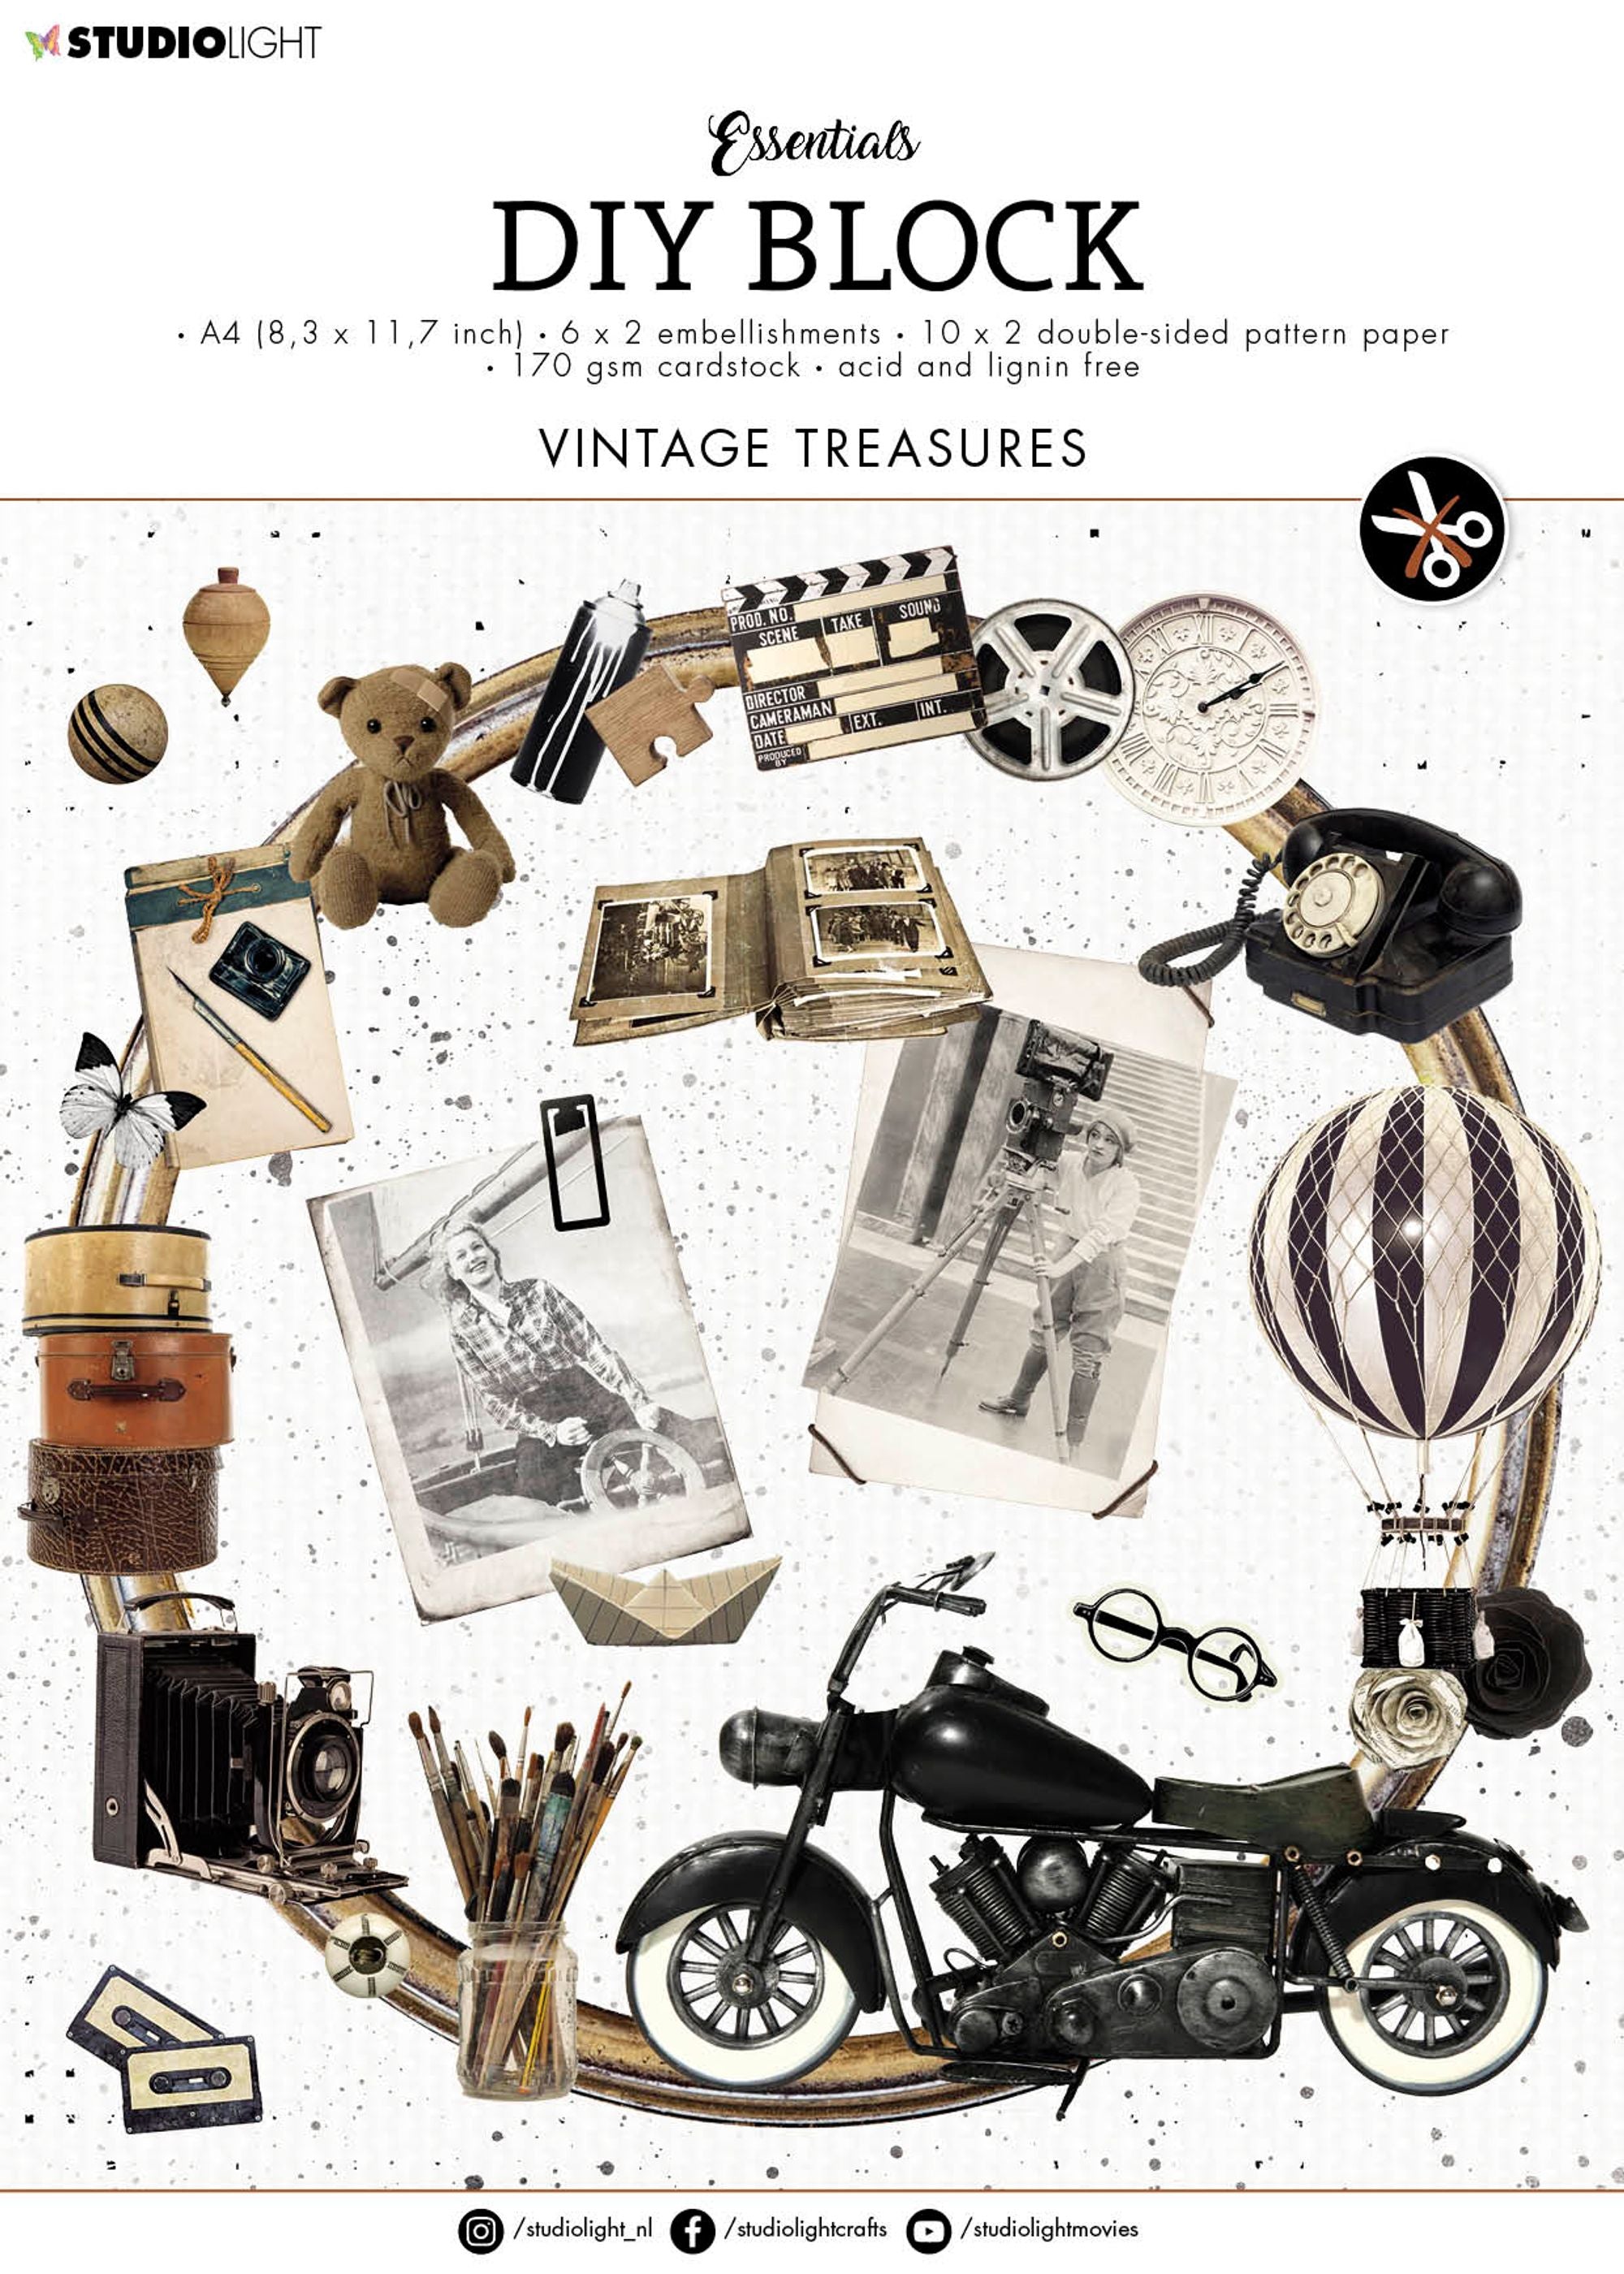 SL DIY Block Vintage Treasures Essentials 294x210xmm 1 PC nr.19